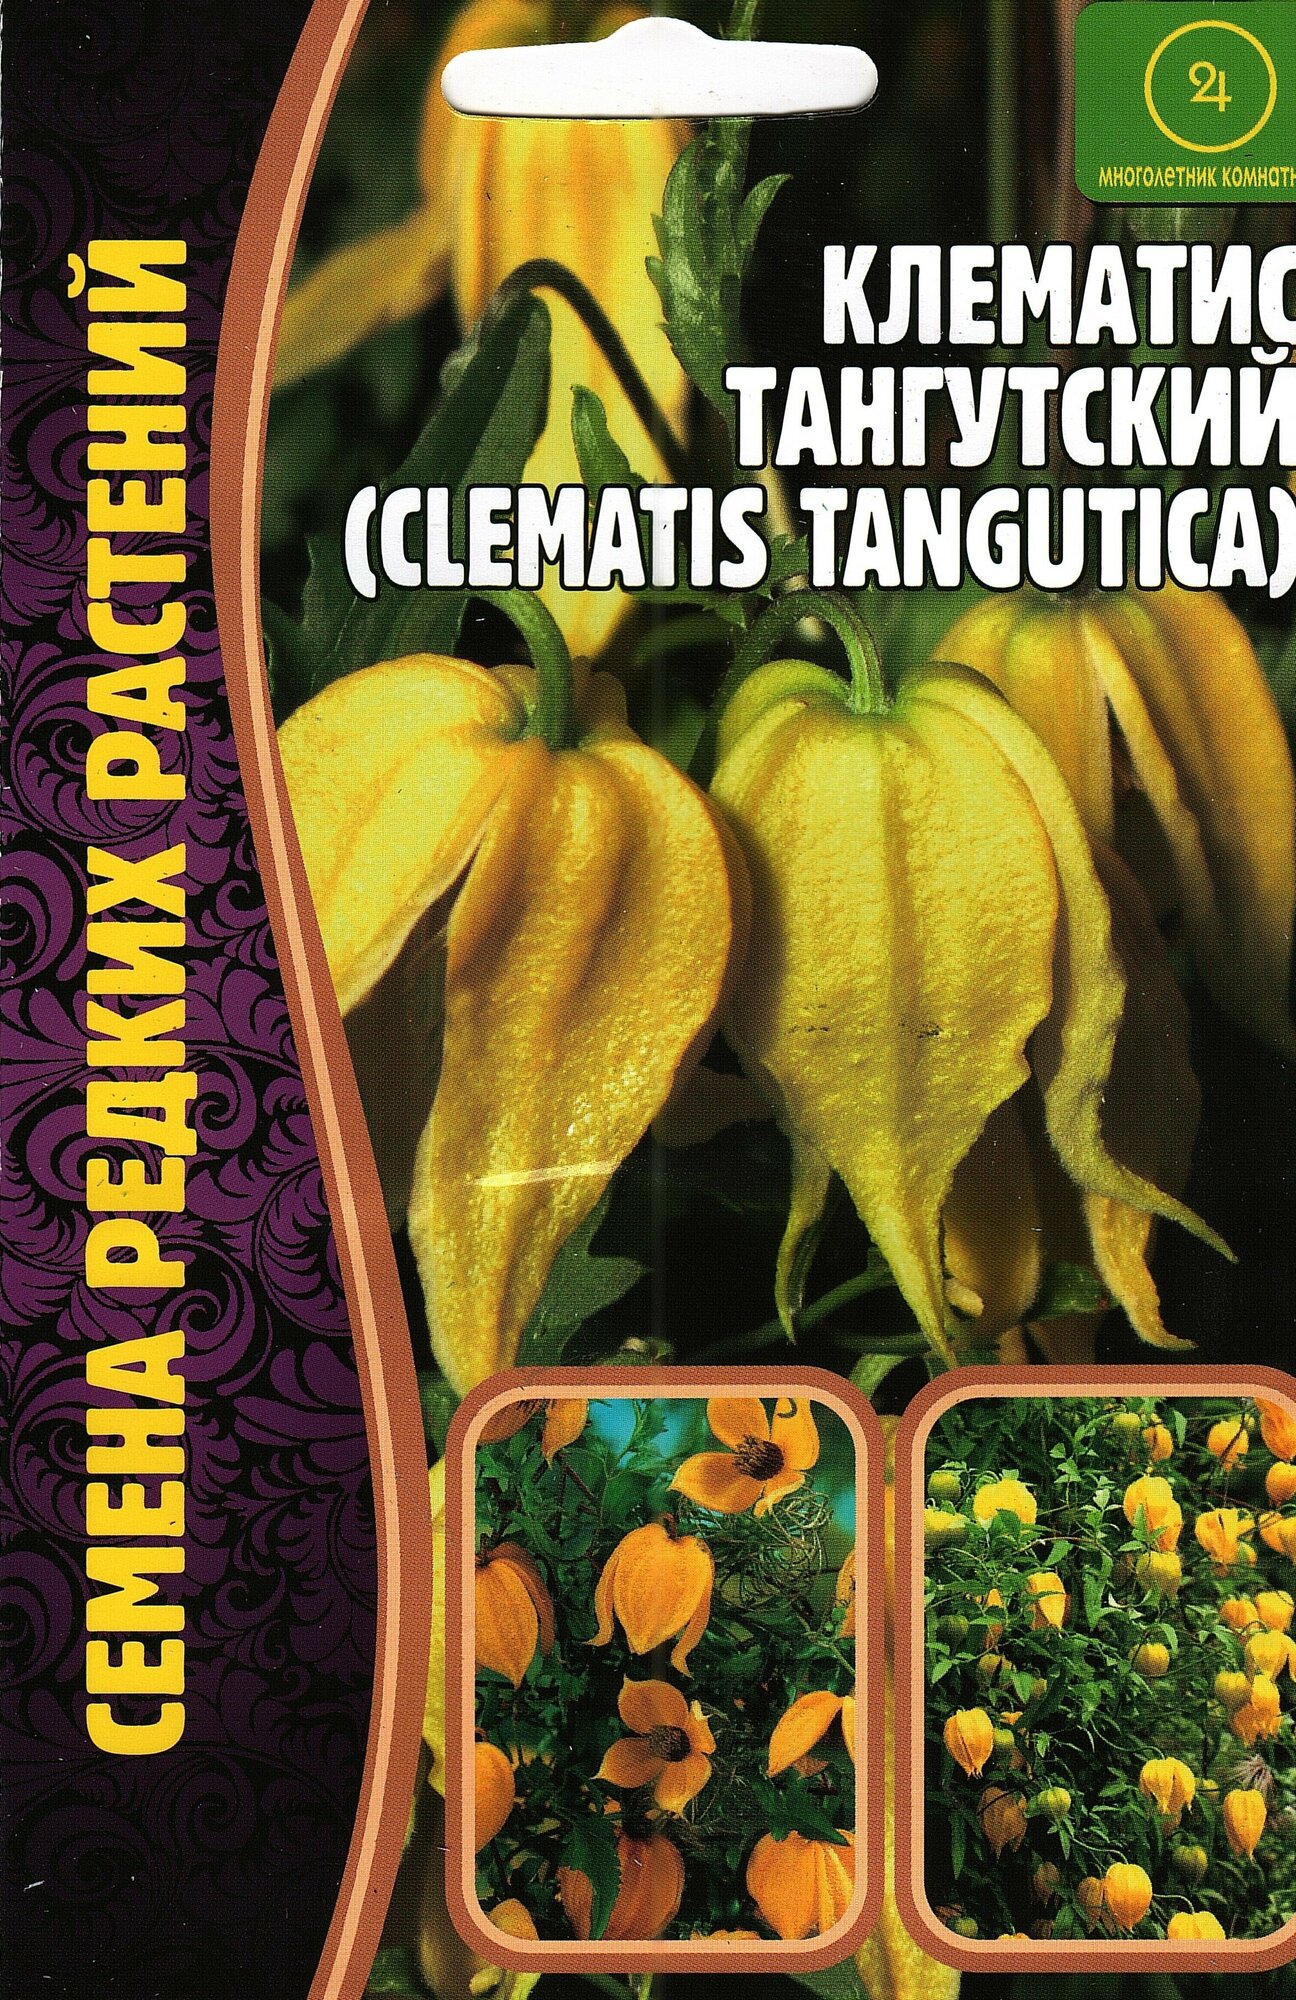 Клематис тангутский, clematis tangutica, семена цветов, лиана многолетняя ( 1 уп: 10 семян )